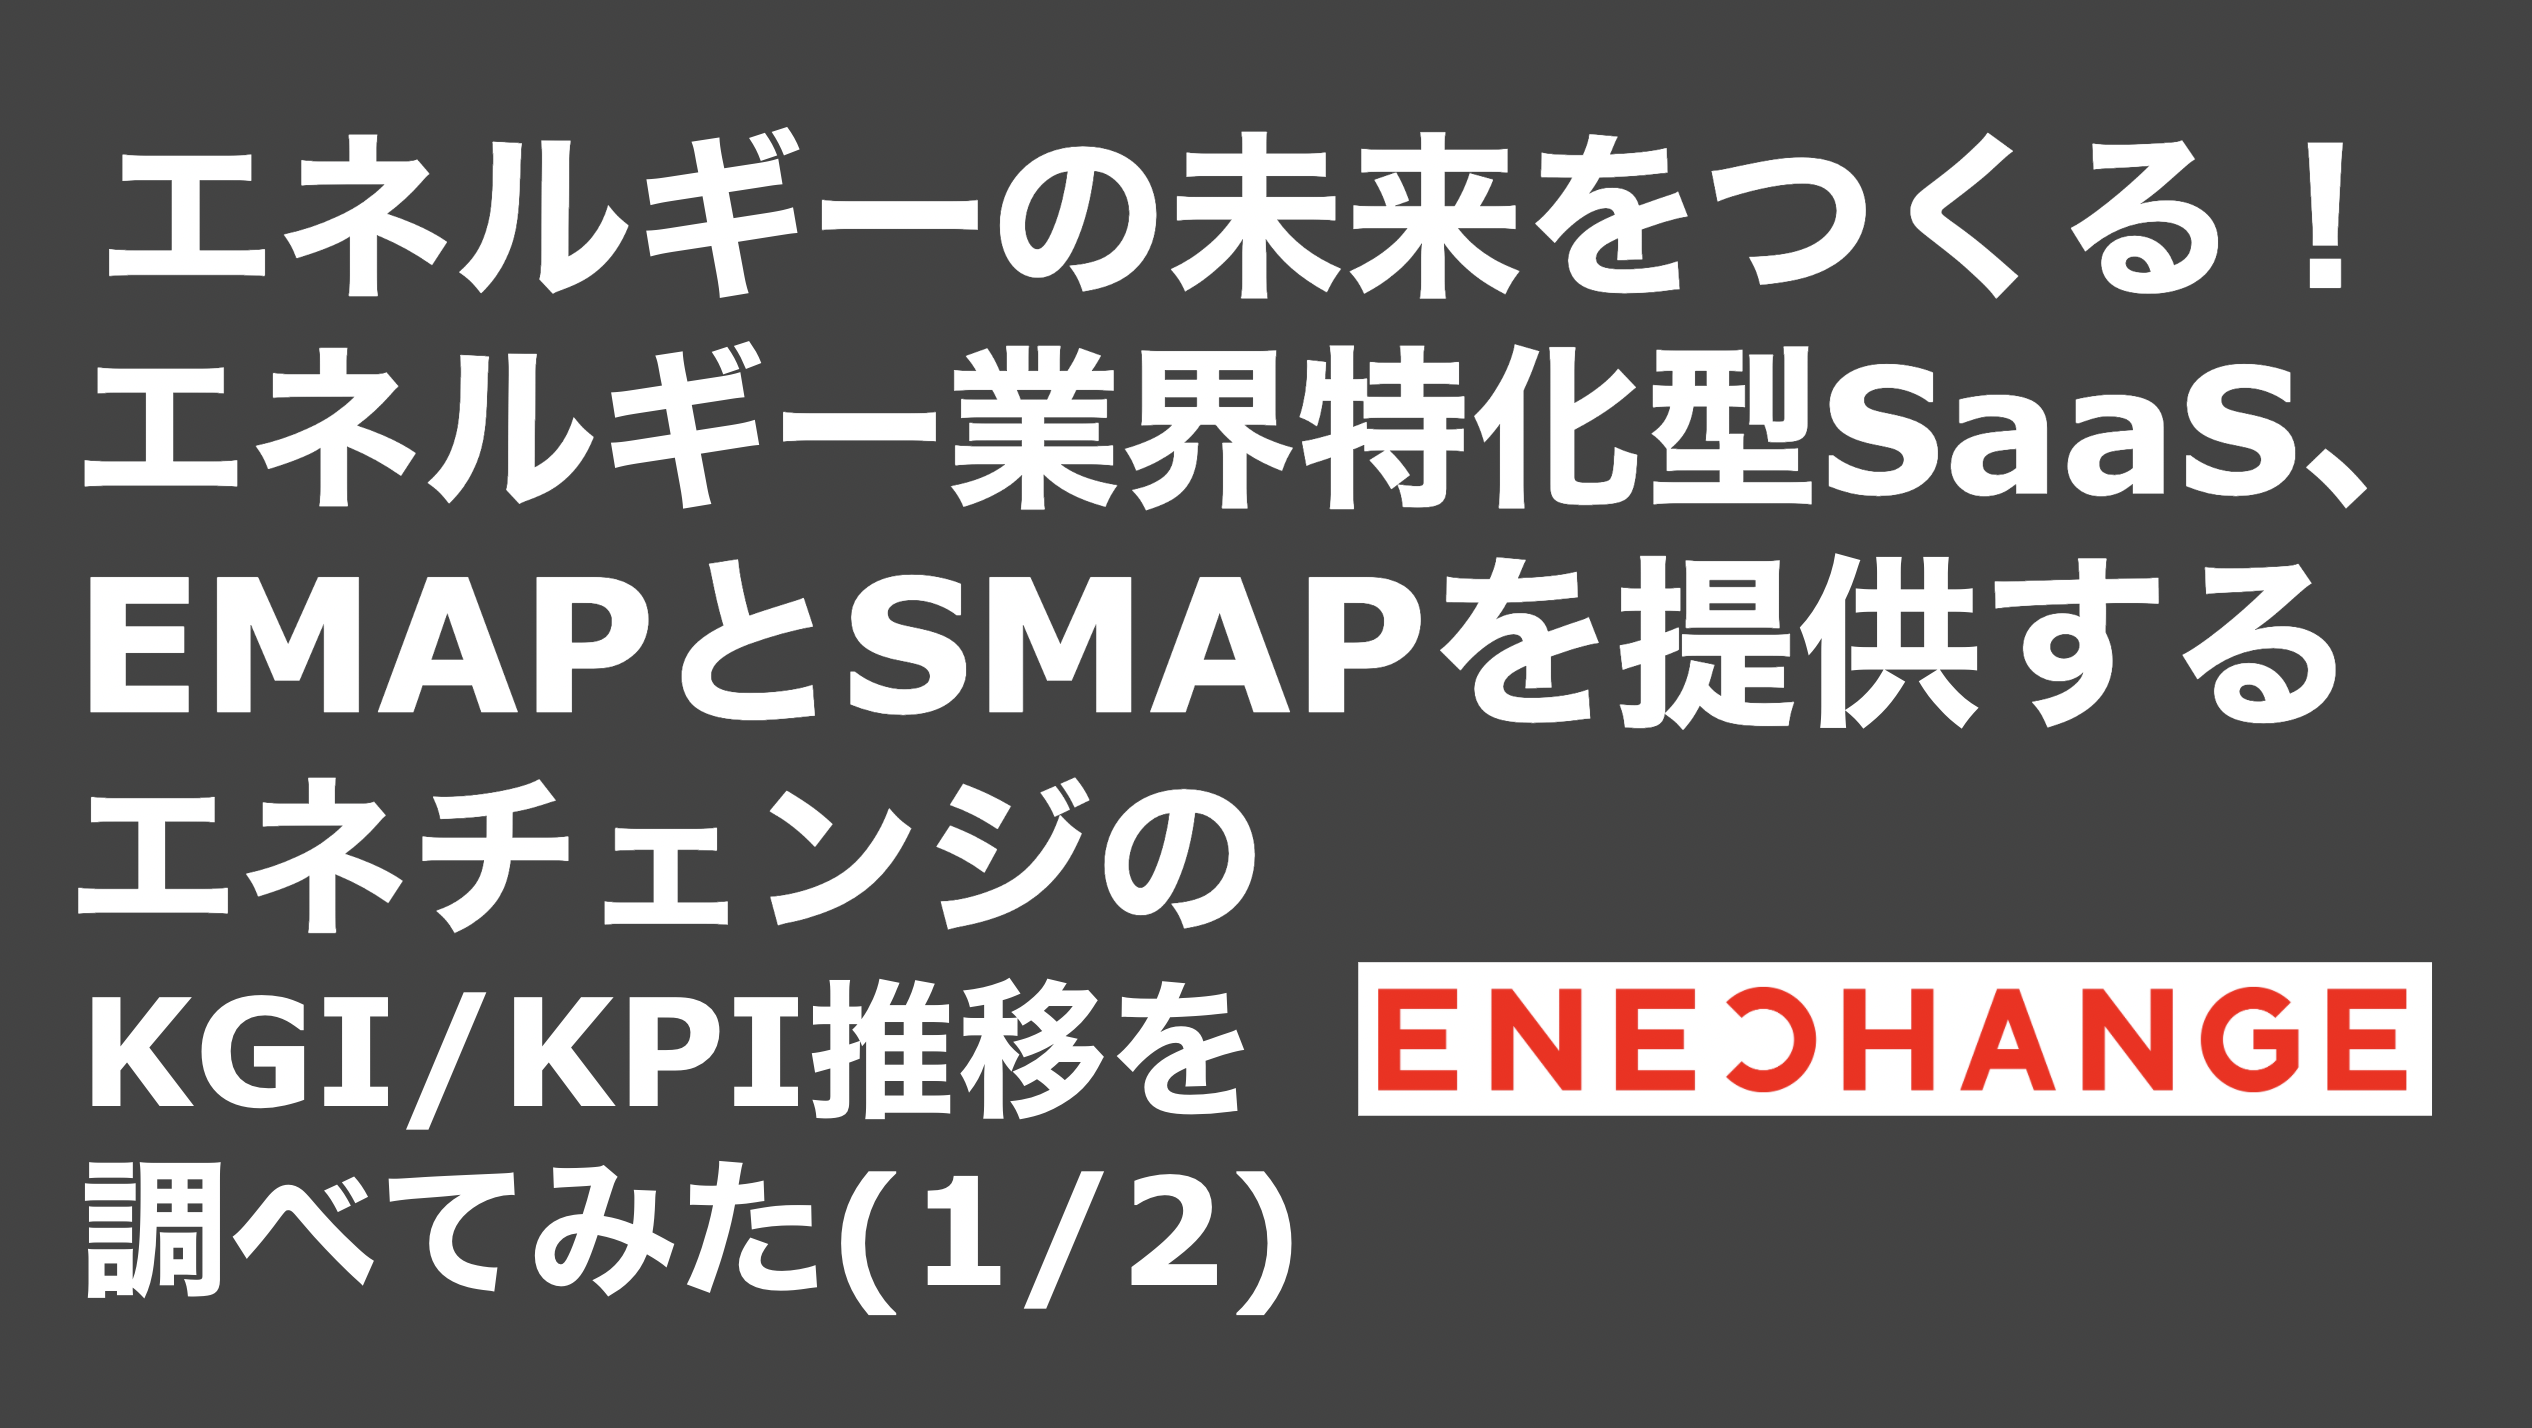 saaslife_エネルギーの未来をつくる！エネルギー業界特化型SaaS、EMAPとSMAPを提供するエネチェンジのKGI/KPI推移を調べてみた(1/2)